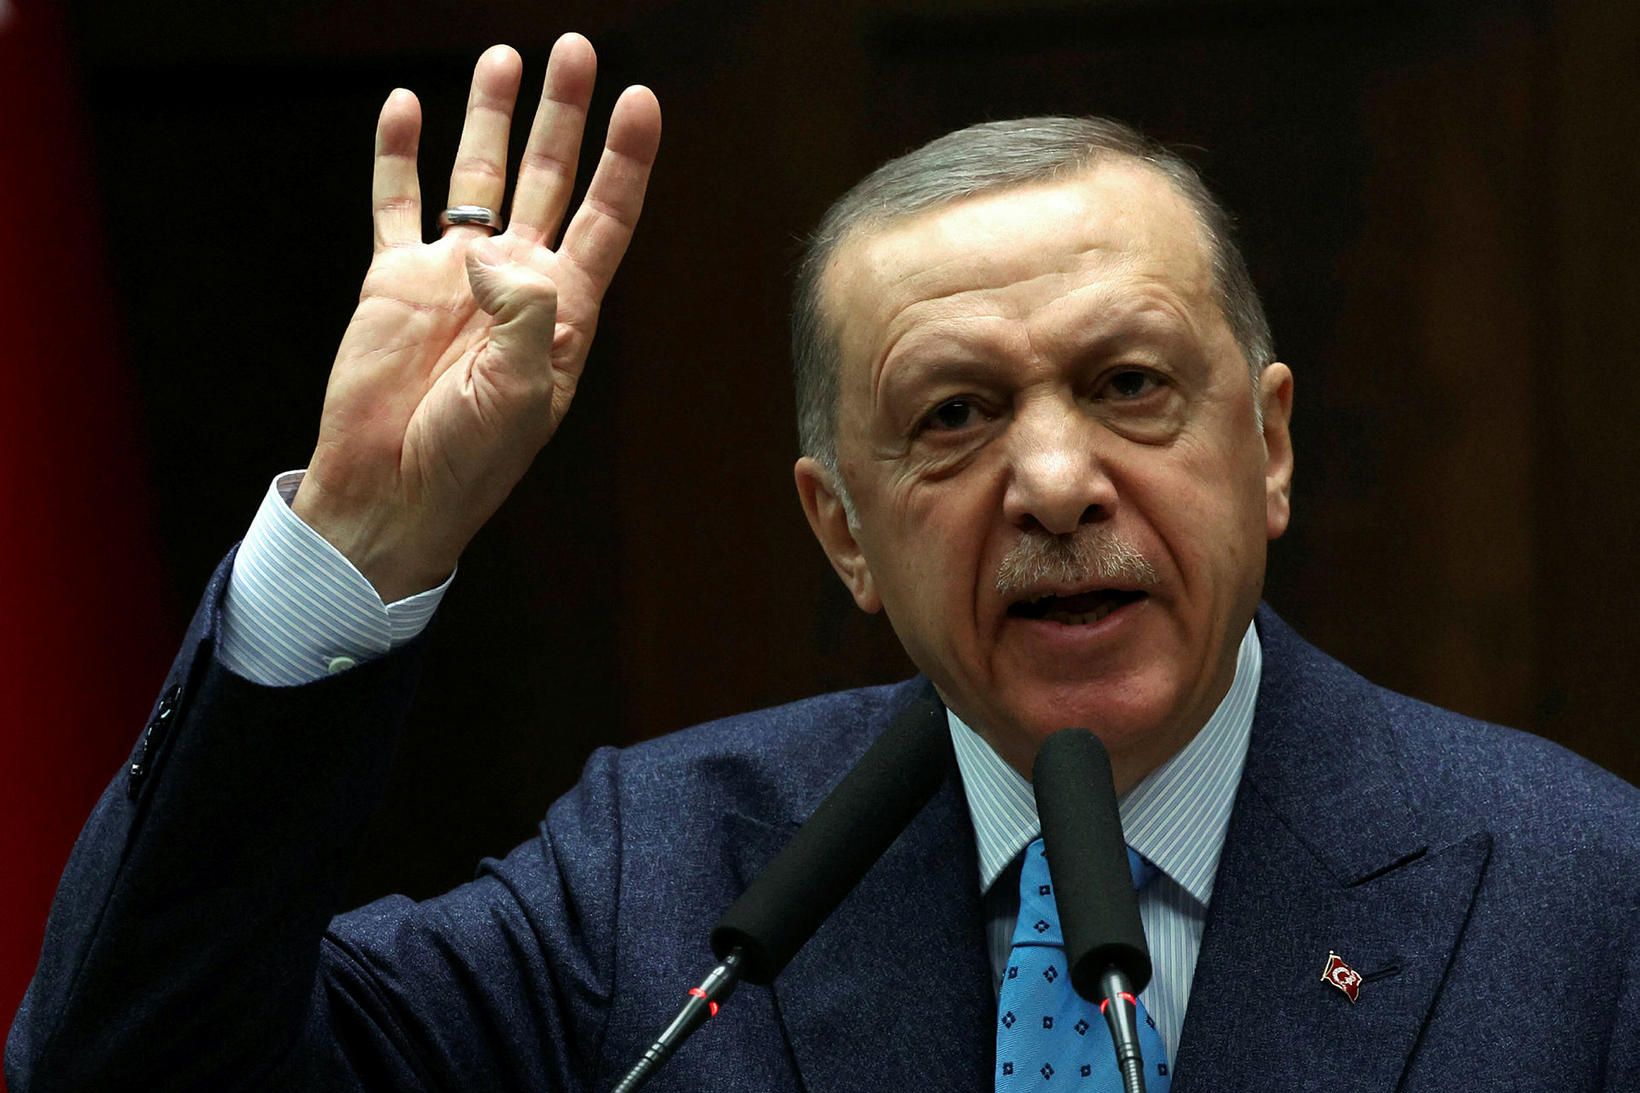 Erdogan Tyrklandsforseti mun vilja halda forsetaembættinu eitt kjörtímabil enn.